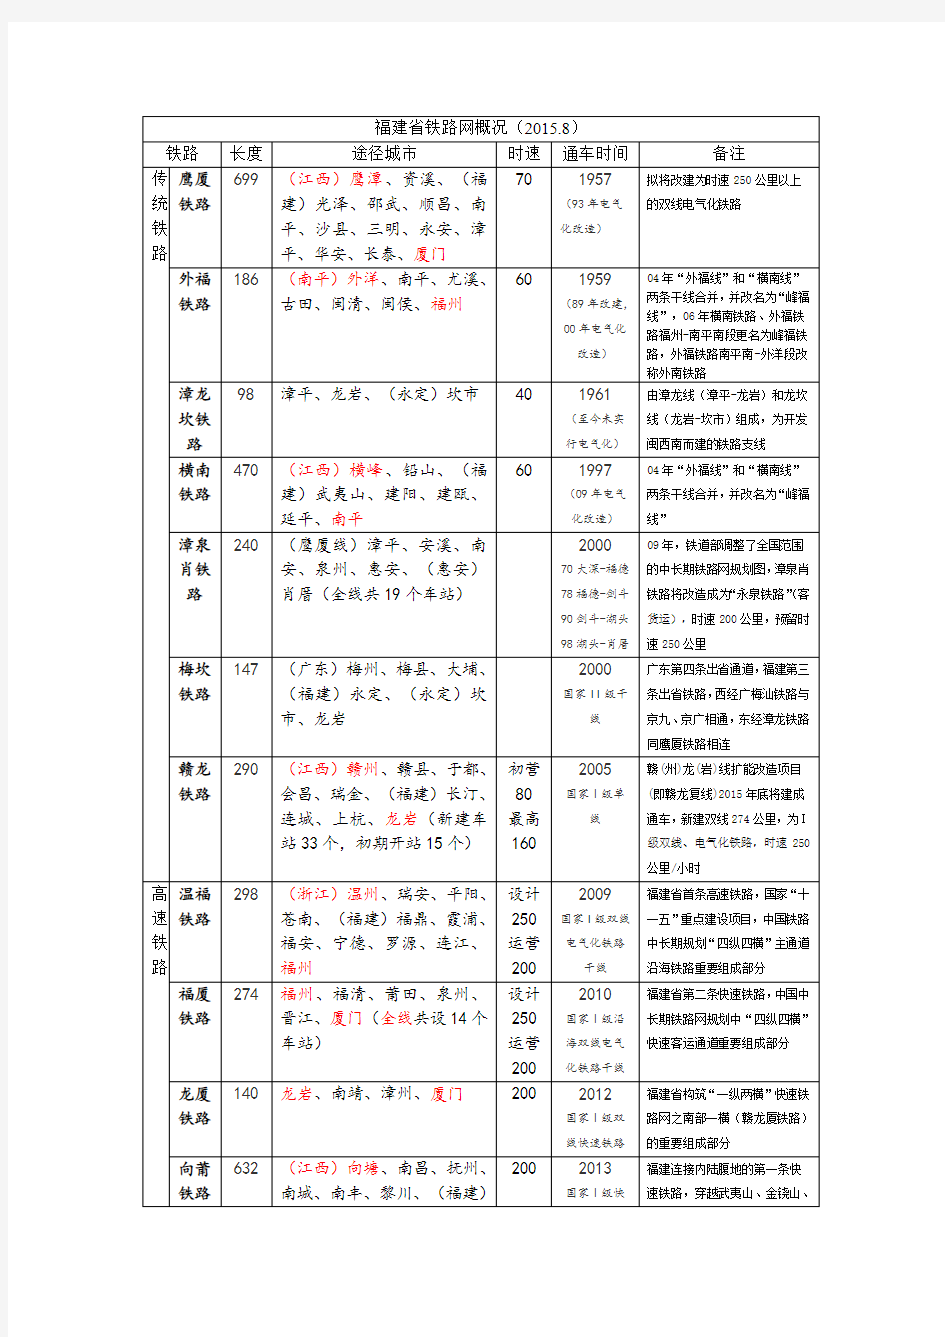 福建省铁路网概况(2015.8)